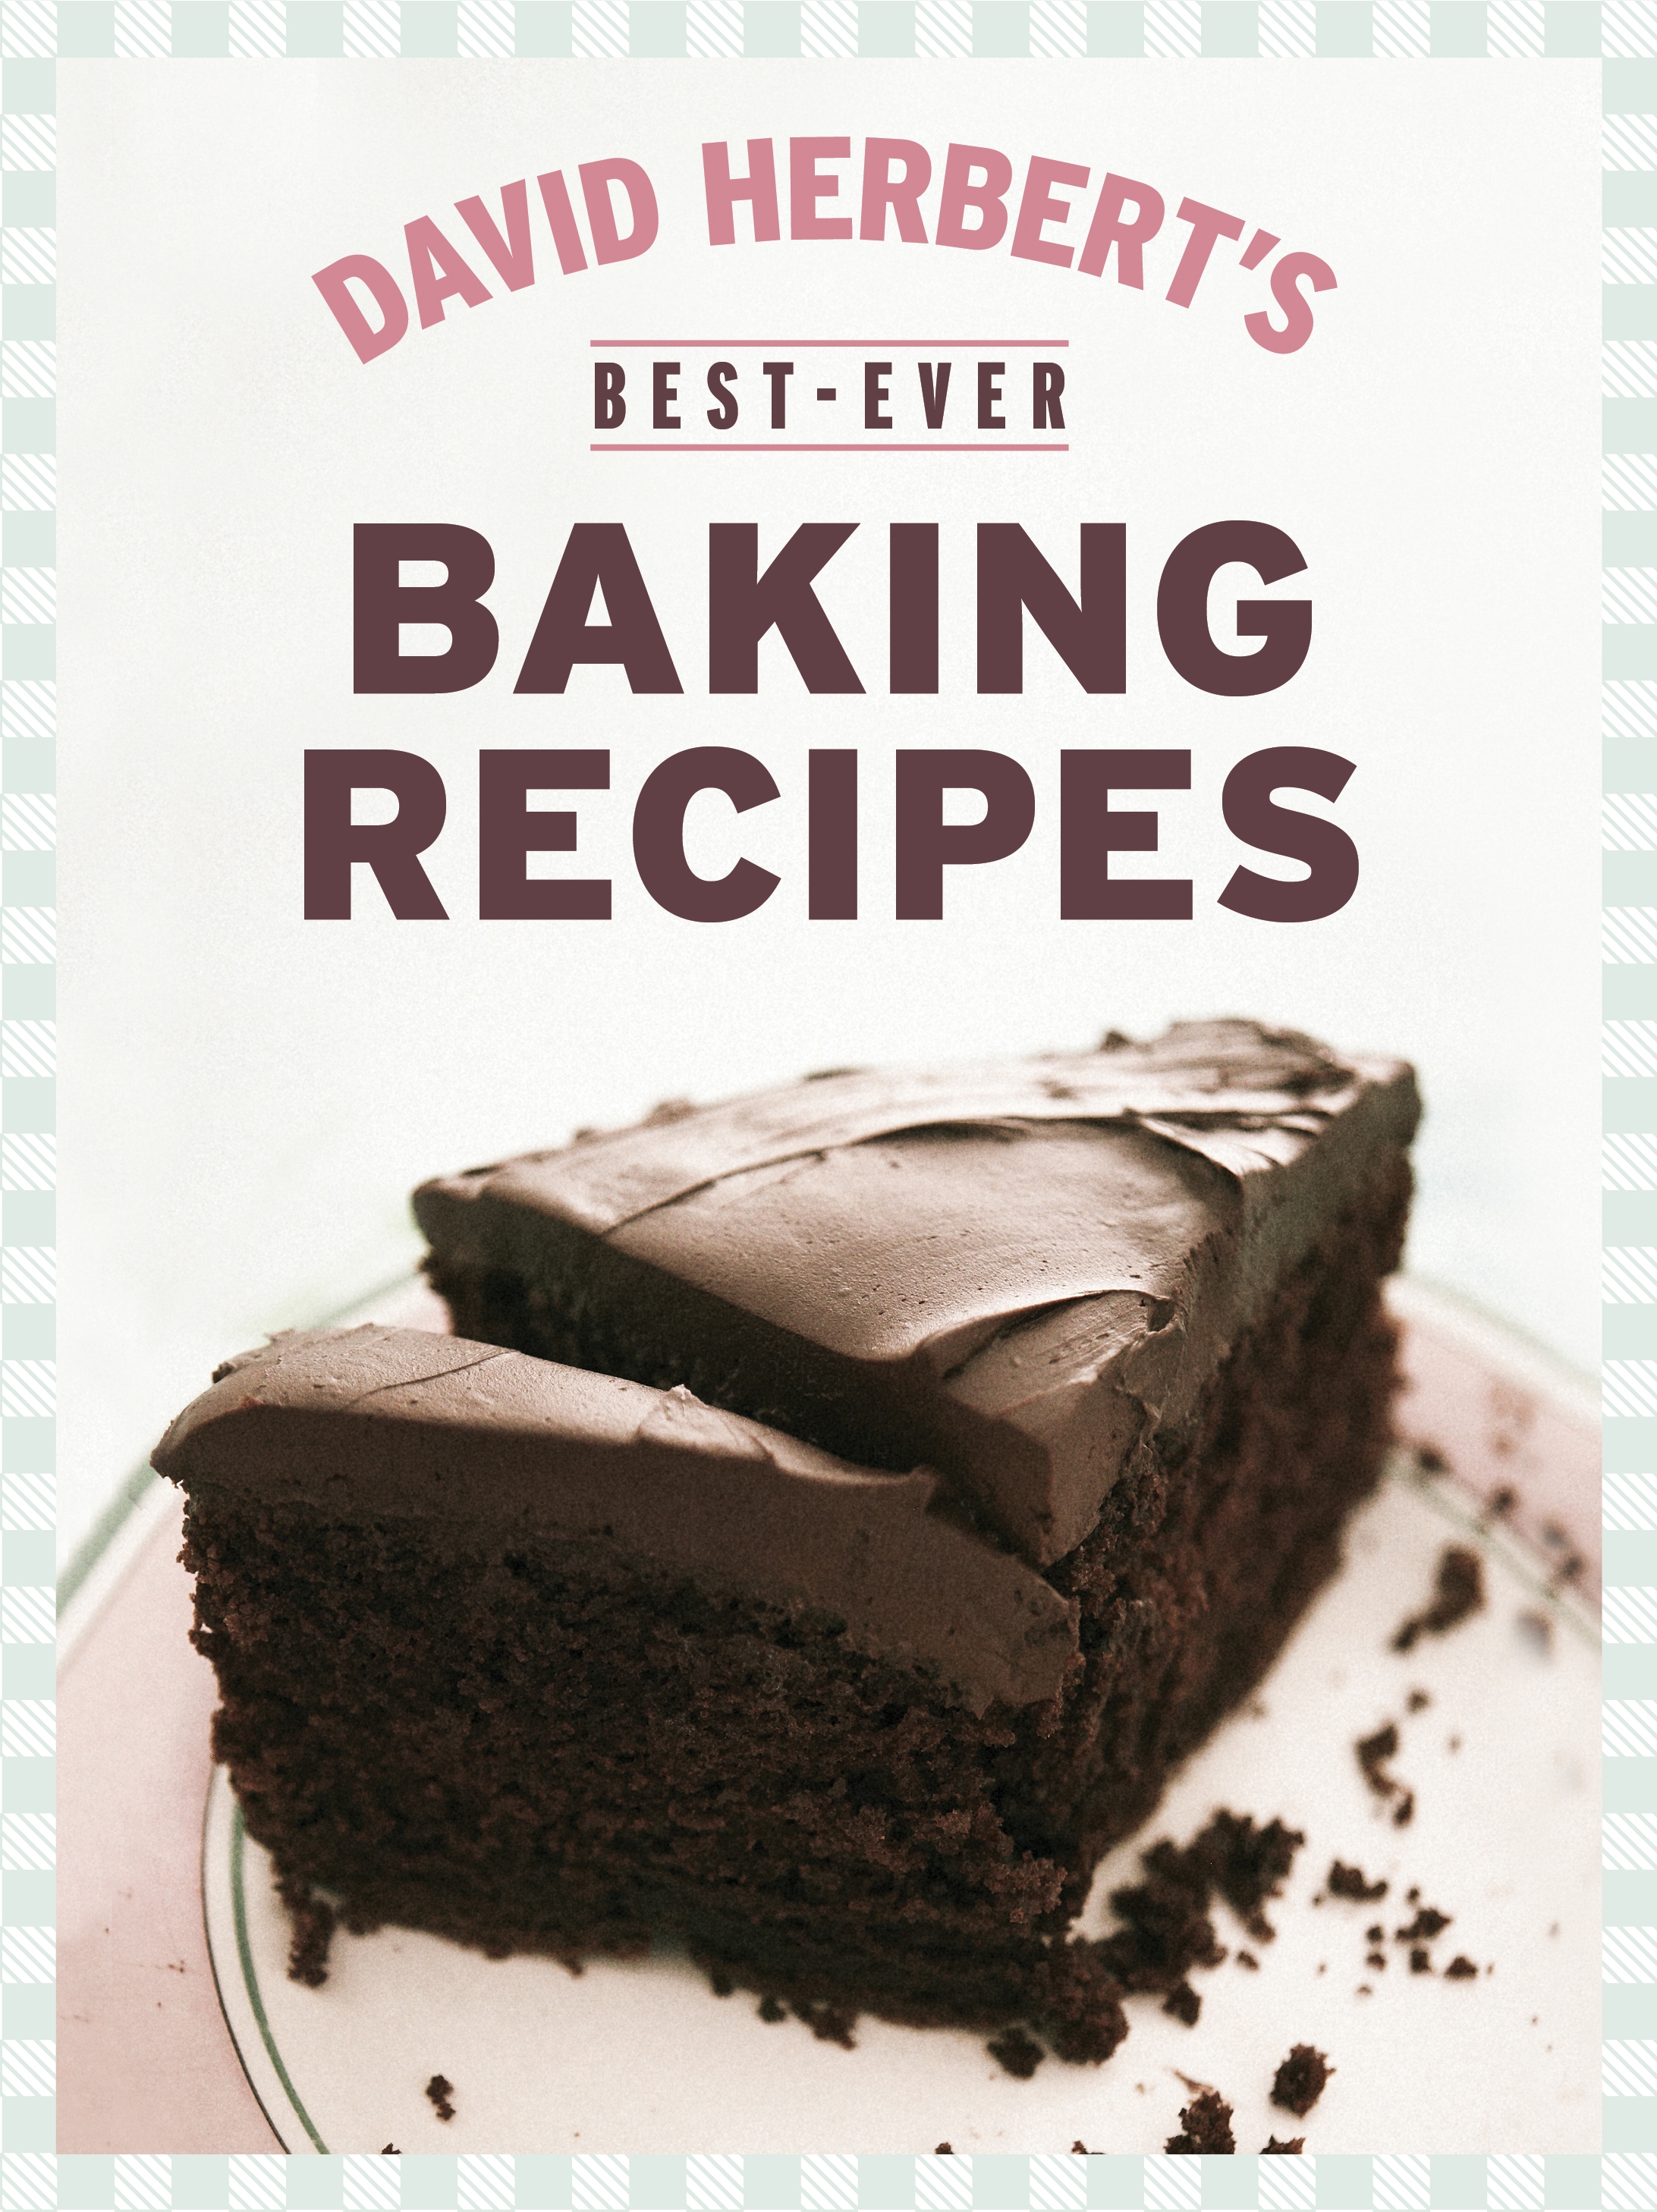 Bestever Baking Recipes by David Herbert Penguin Books Australia